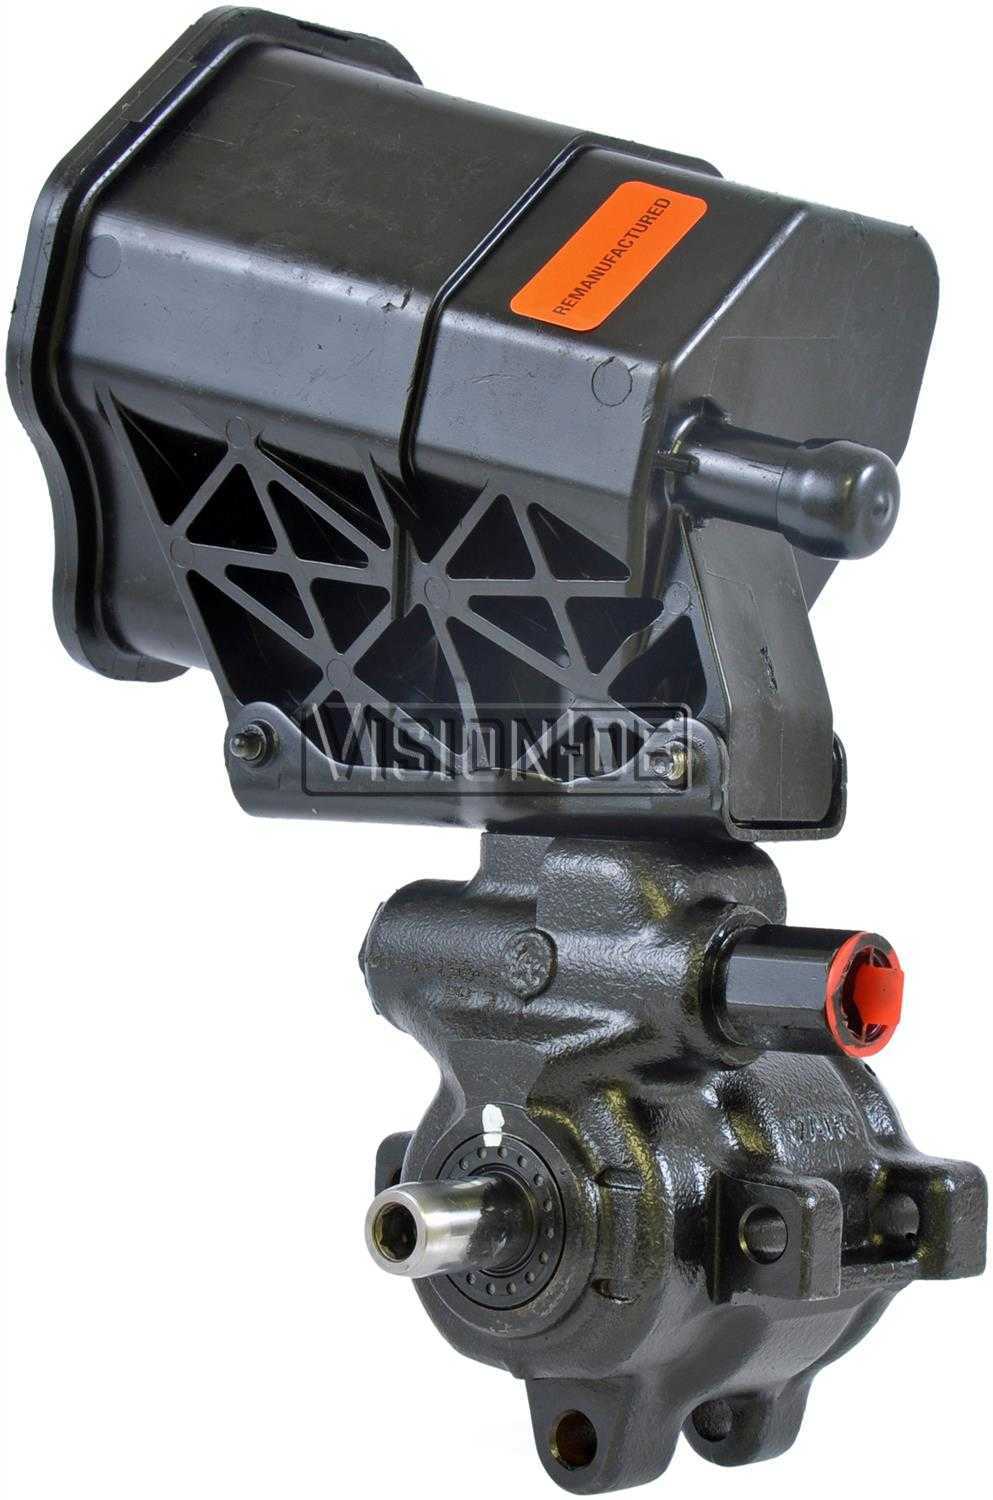 VISION-OE - Reman Power Steering Pump - VOE 720-01127